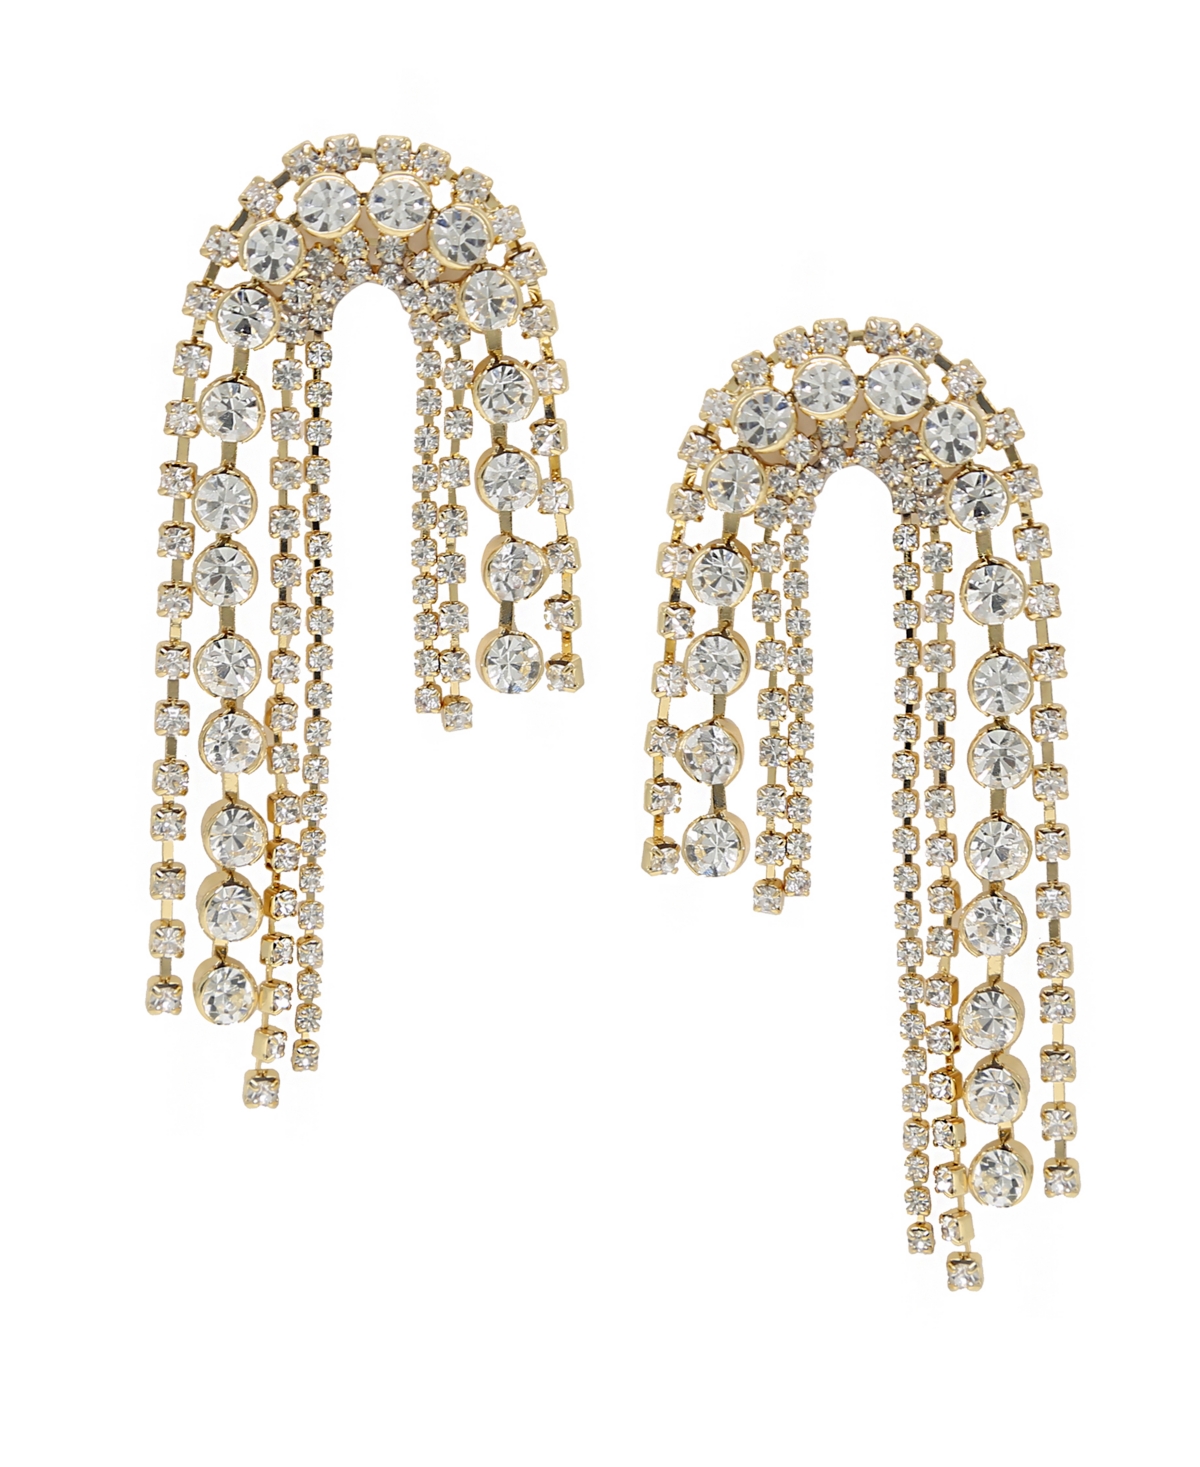 Ettika Embellished Arch Statement Earrings In 18k Gold Plate